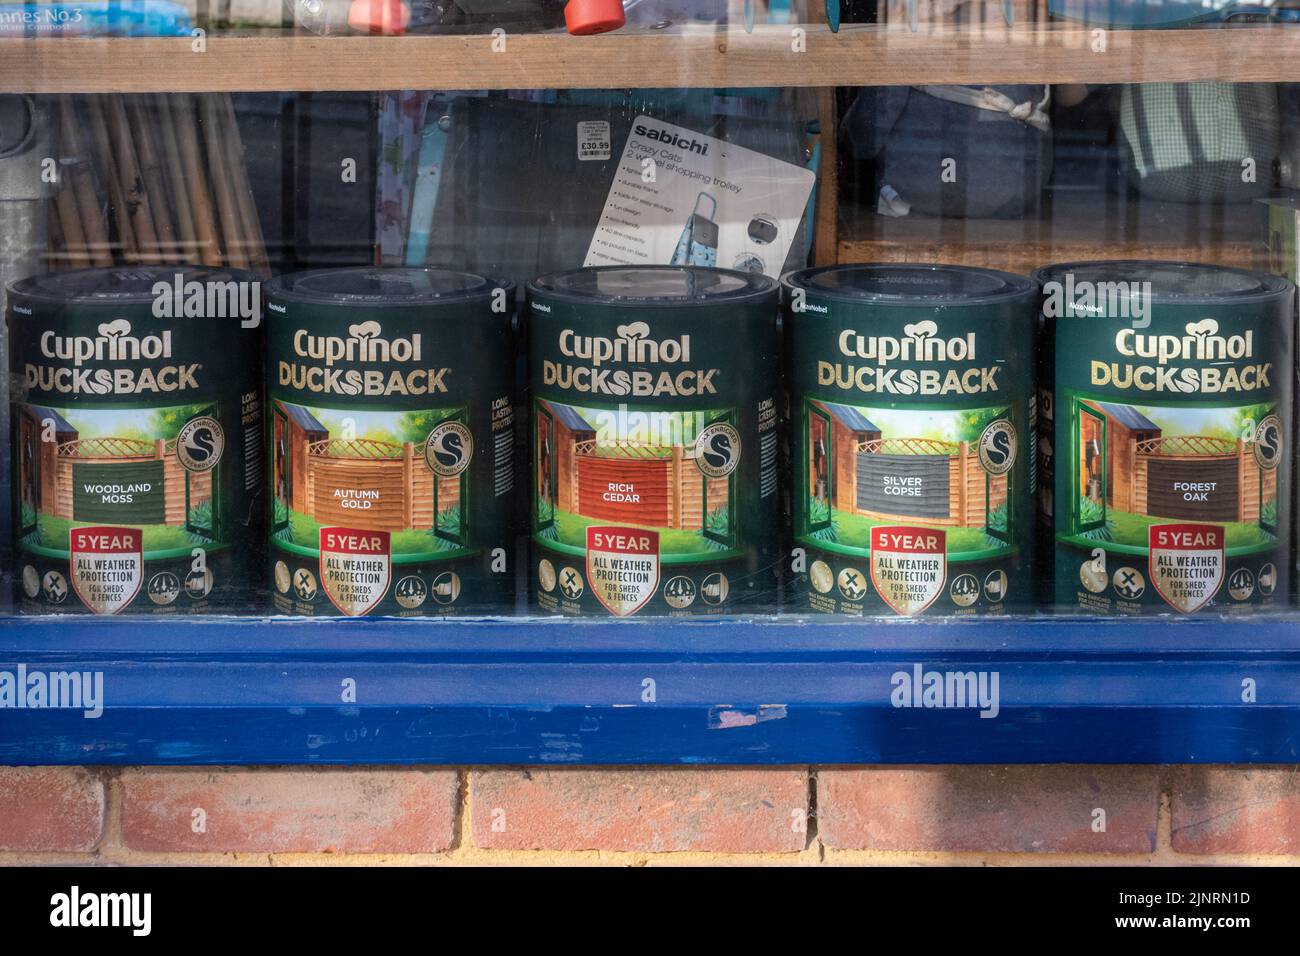 Cuprinol Ducksback, latas de madera mancha en un escaparate, Inglaterra, Reino Unido Foto de stock